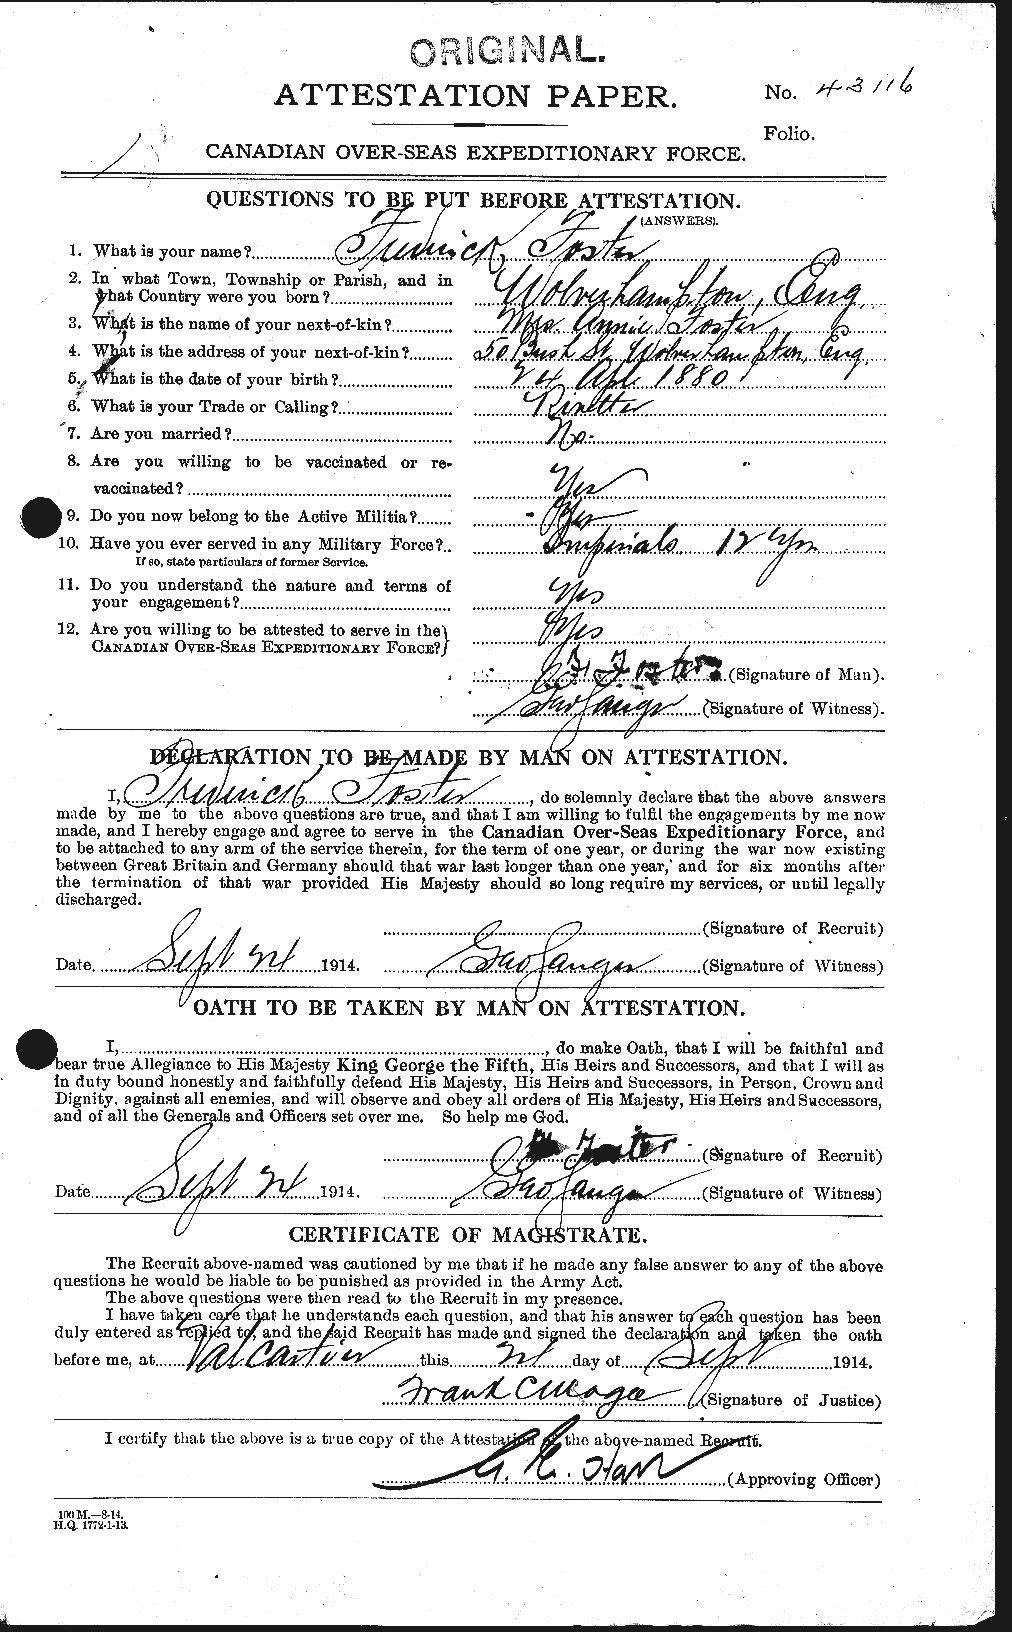 Dossiers du Personnel de la Première Guerre mondiale - CEC 330643a